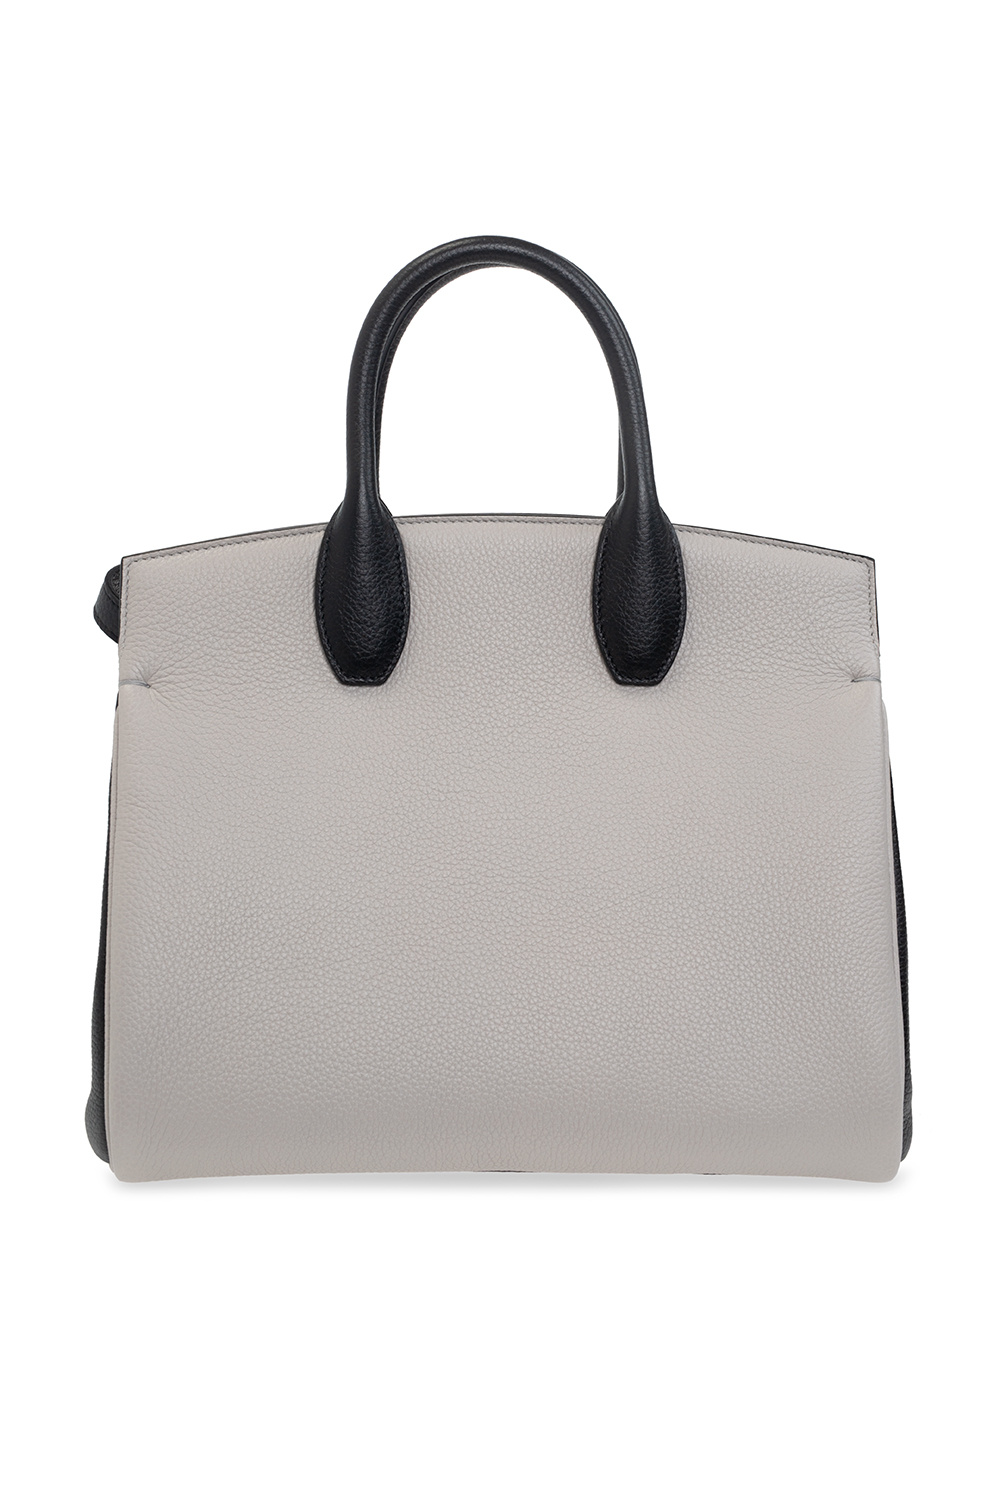 Salvatore Ferragamo ‘Studio Bag Small’  shoulder bag